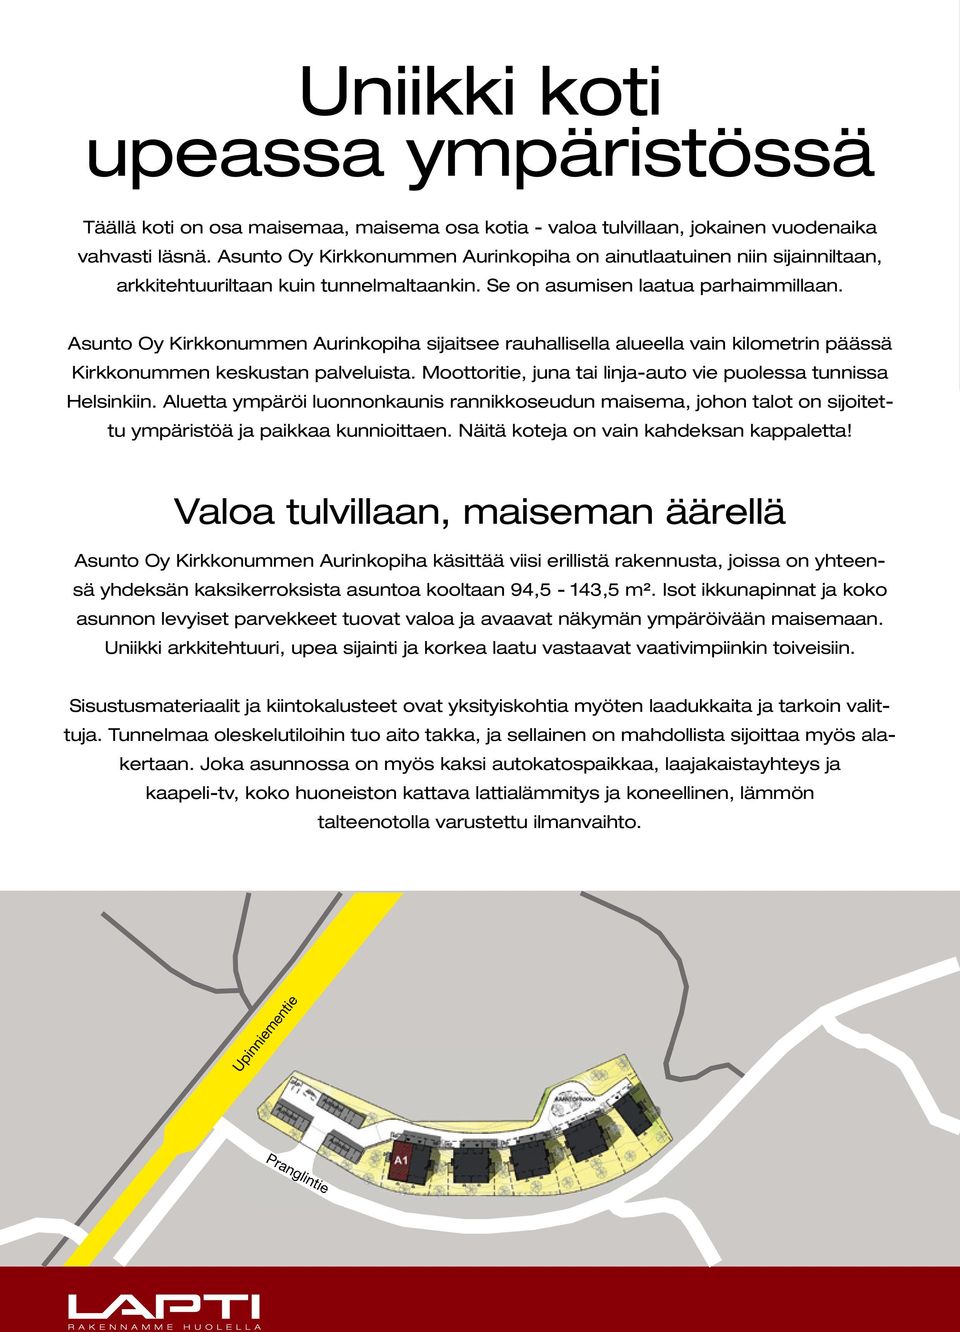 Asunto Oy Kirkkonummen Aurinkopiha sijaitsee rauhallisella alueella vain kilometrin päässä Kirkkonummen keskustan palveluista. Moottoritie, juna tai linja-auto vie puolessa tunnissa Helsinkiin.